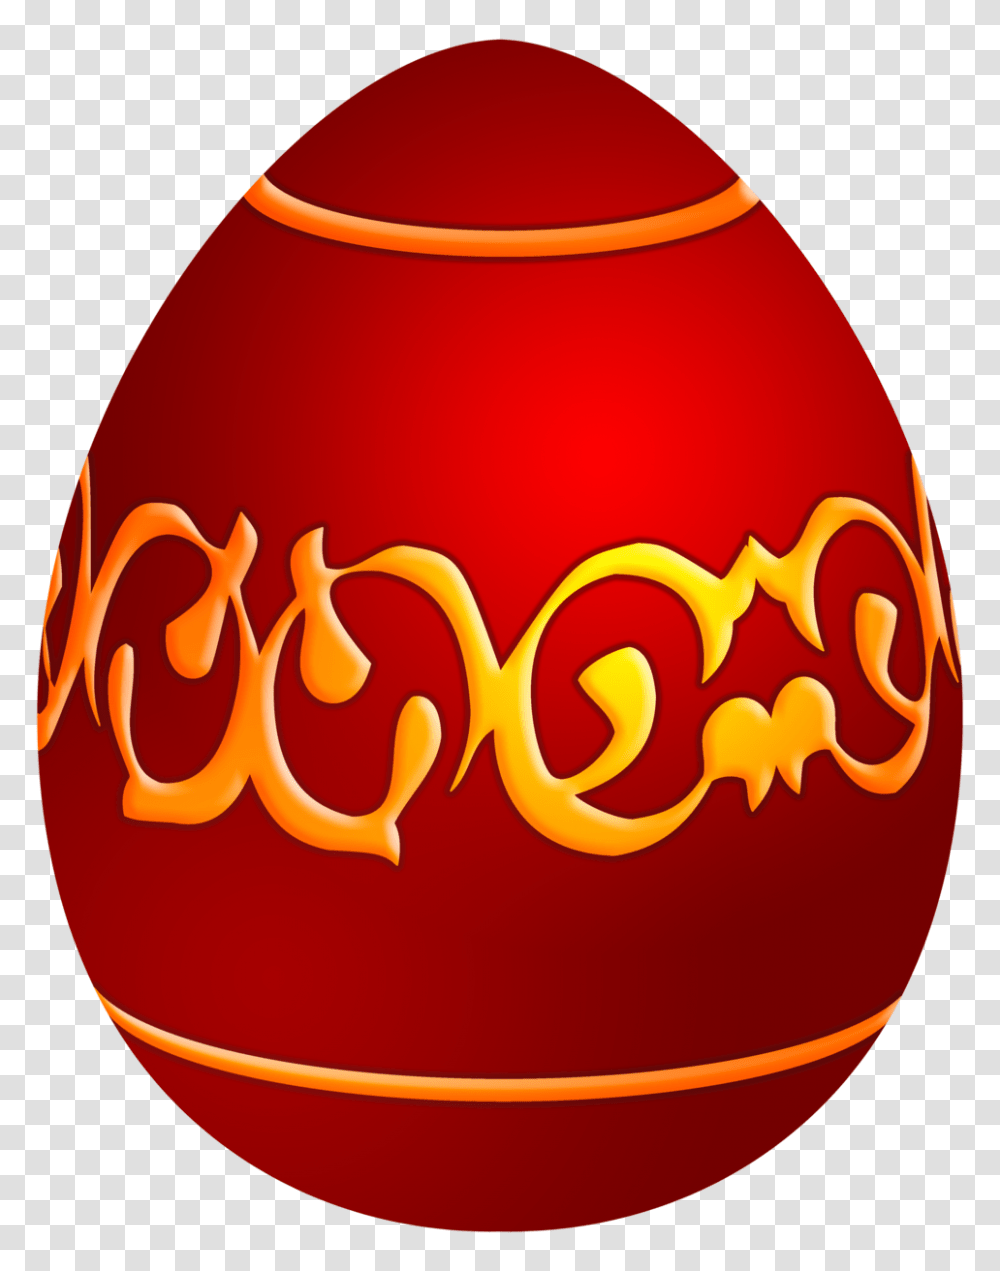 Easter Decorative Red Egg Clip Art, Beverage, Drink, Coke, Coca Transparent Png